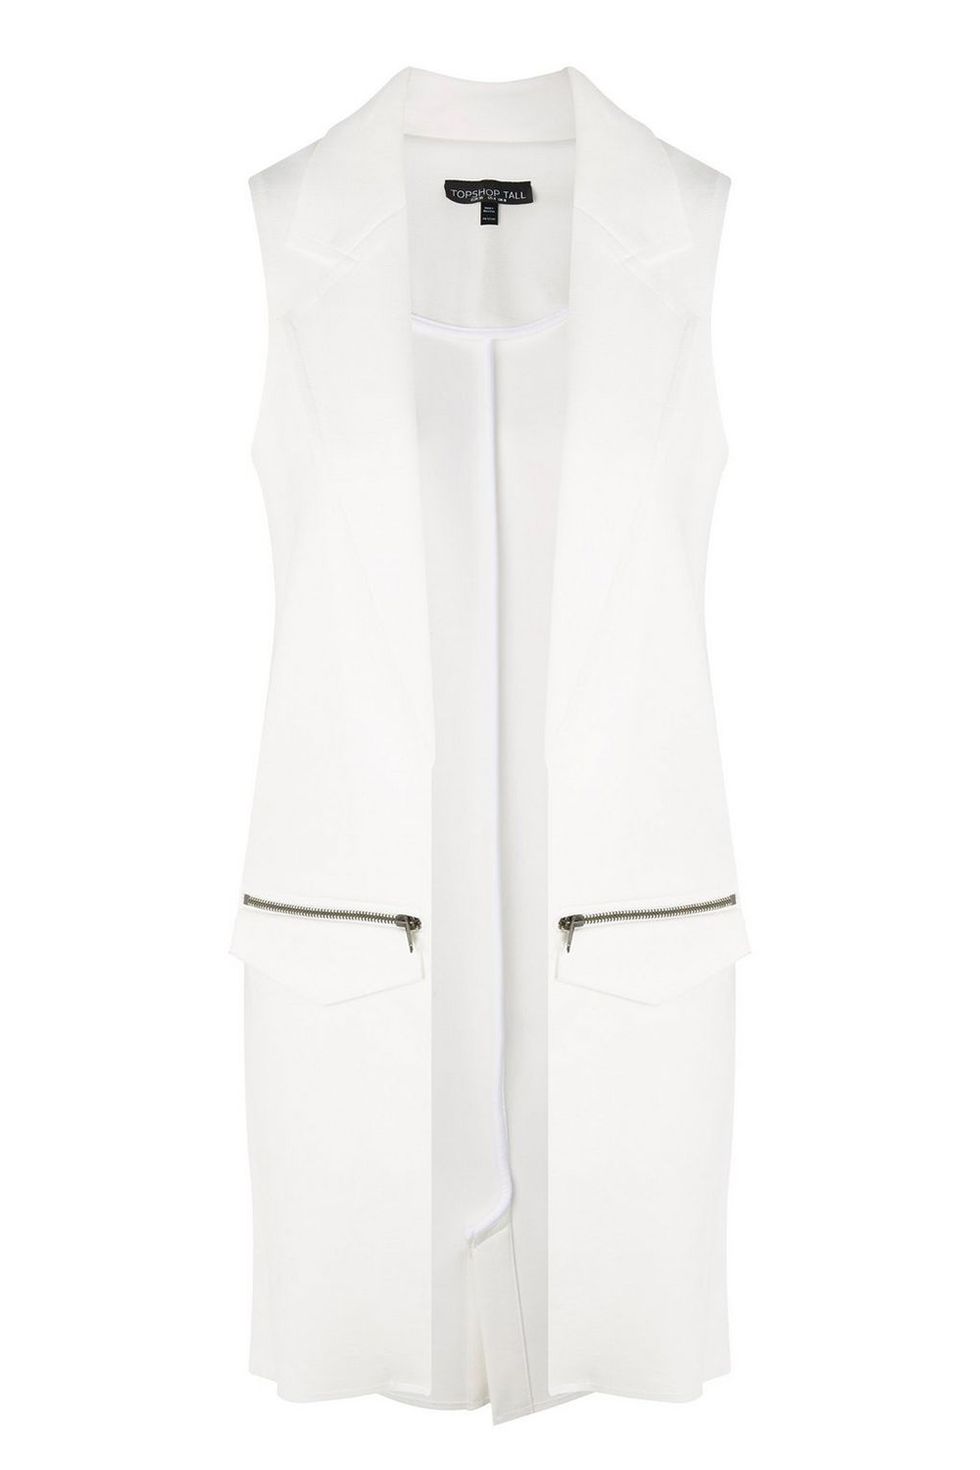 Clothing, White, Outerwear, Vest, Sleeve, Pocket, Jacket, Suit, Sleeveless shirt, Blazer, 